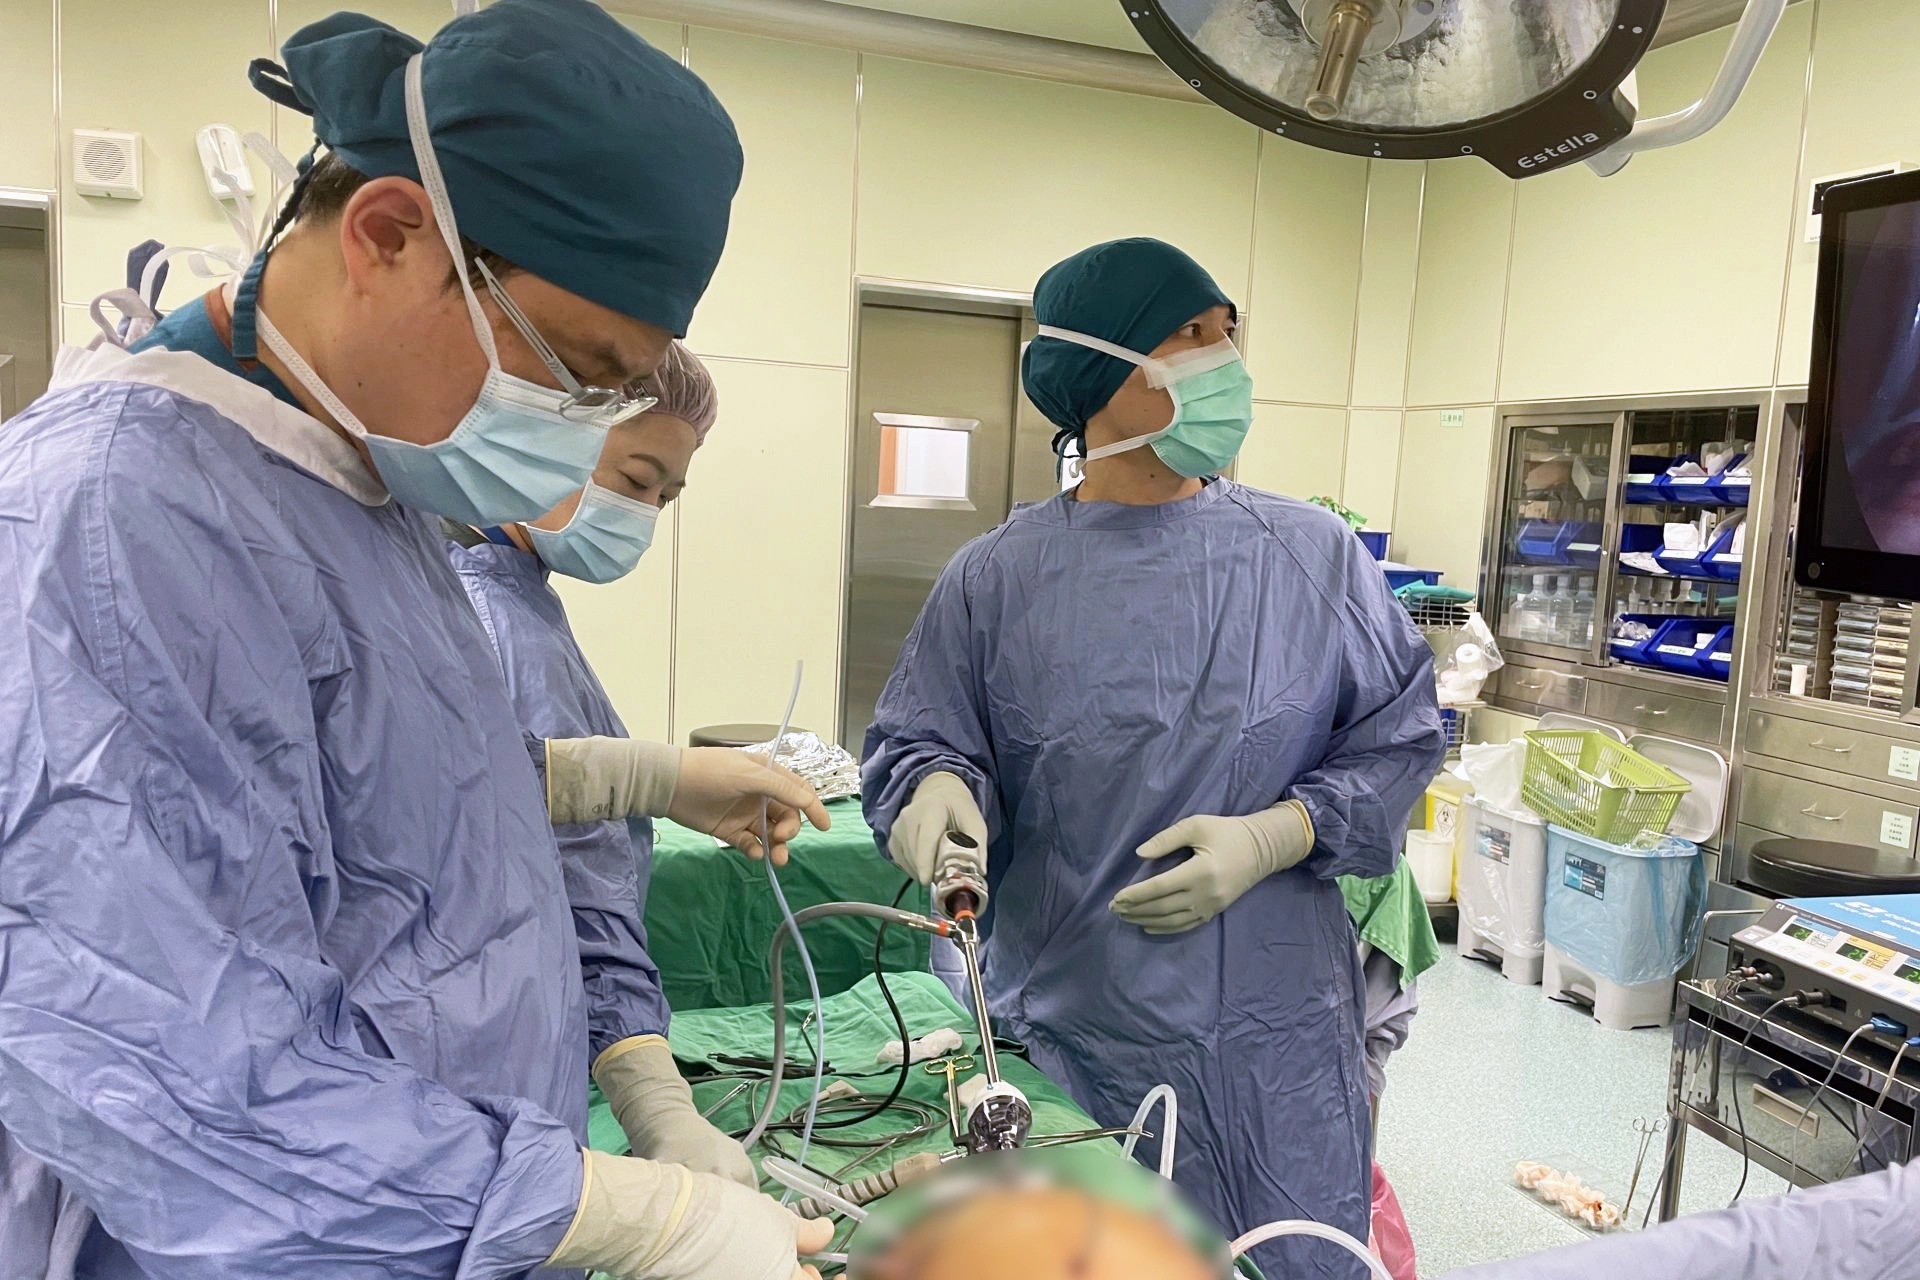 外科團隊以微創手術清除肉眼可見的所有腫瘤，再接續進行腹腔溫熱化療作業。